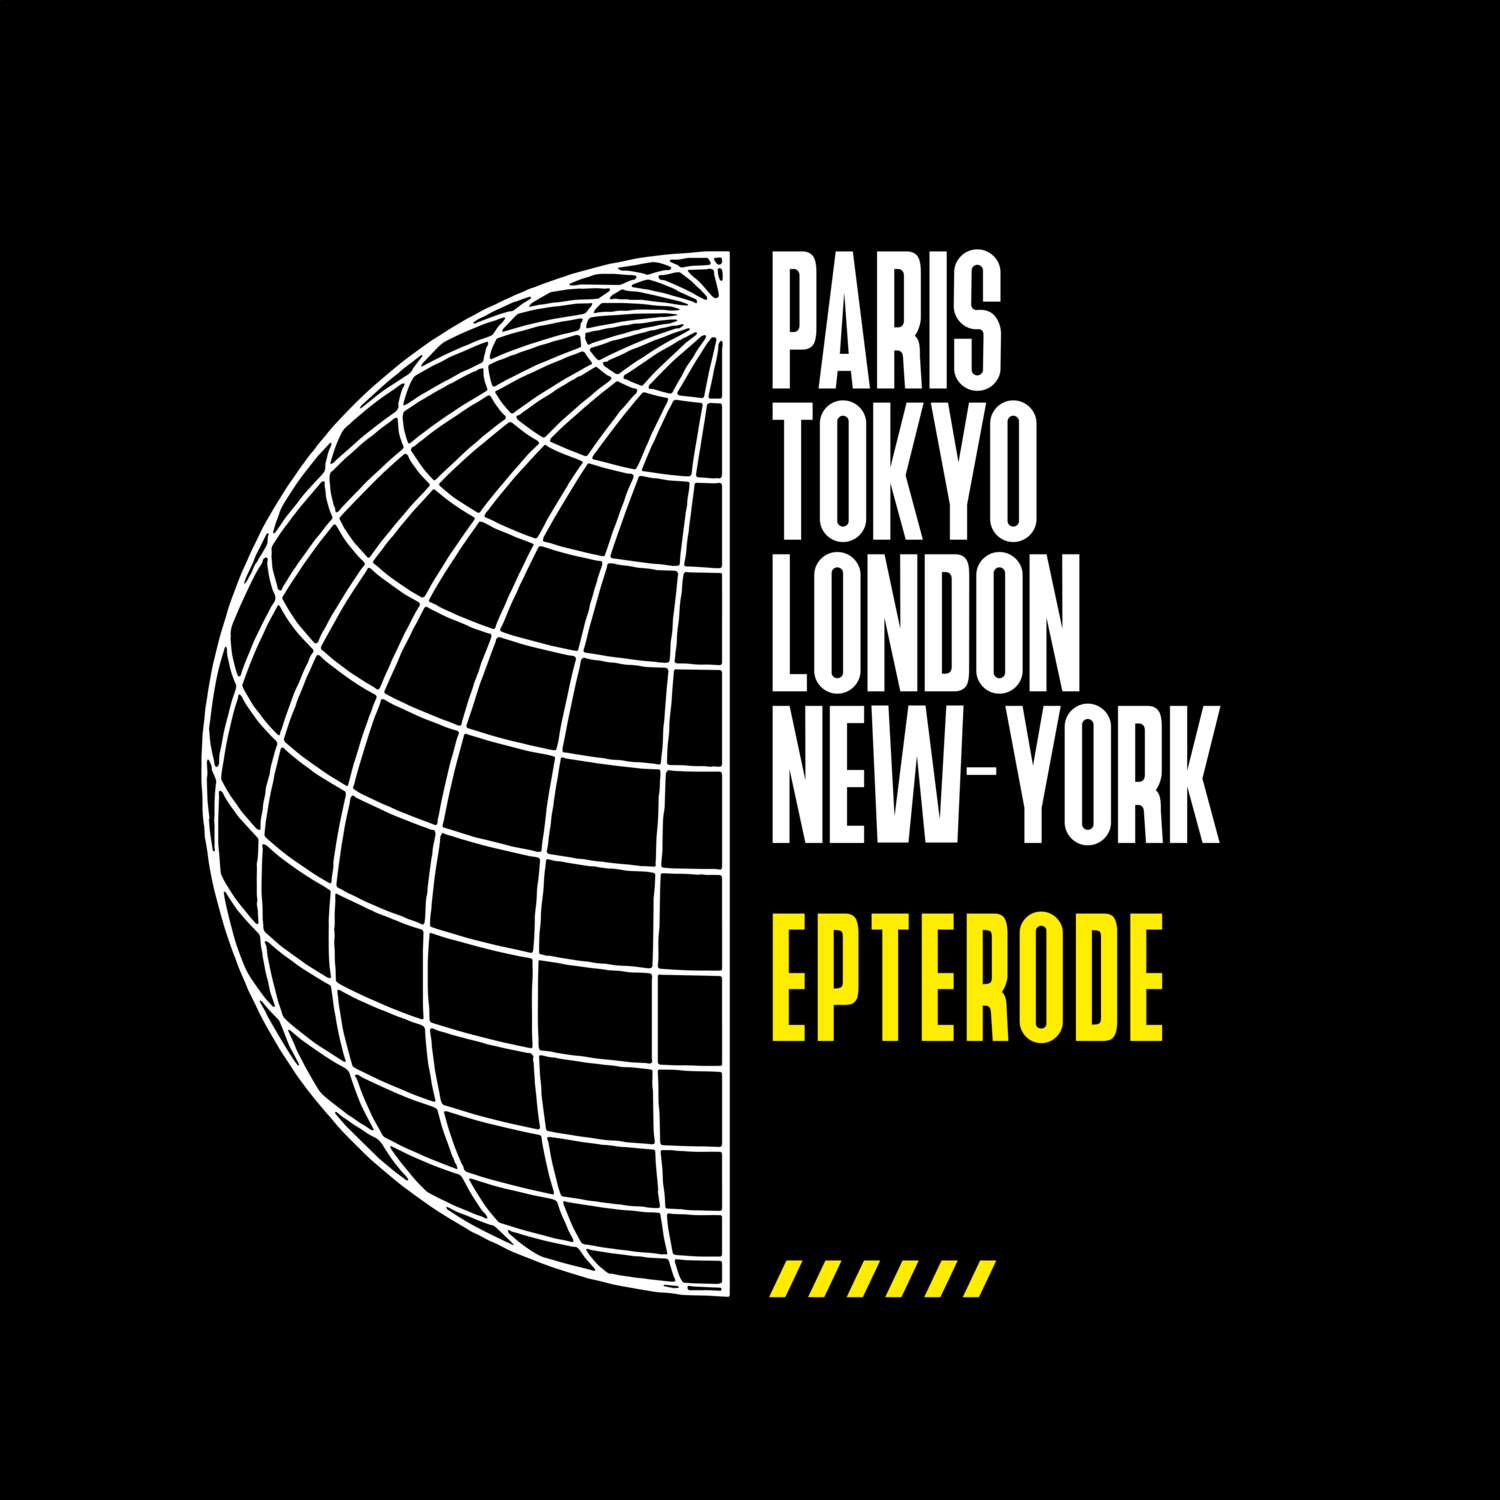 Epterode T-Shirt »Paris Tokyo London«